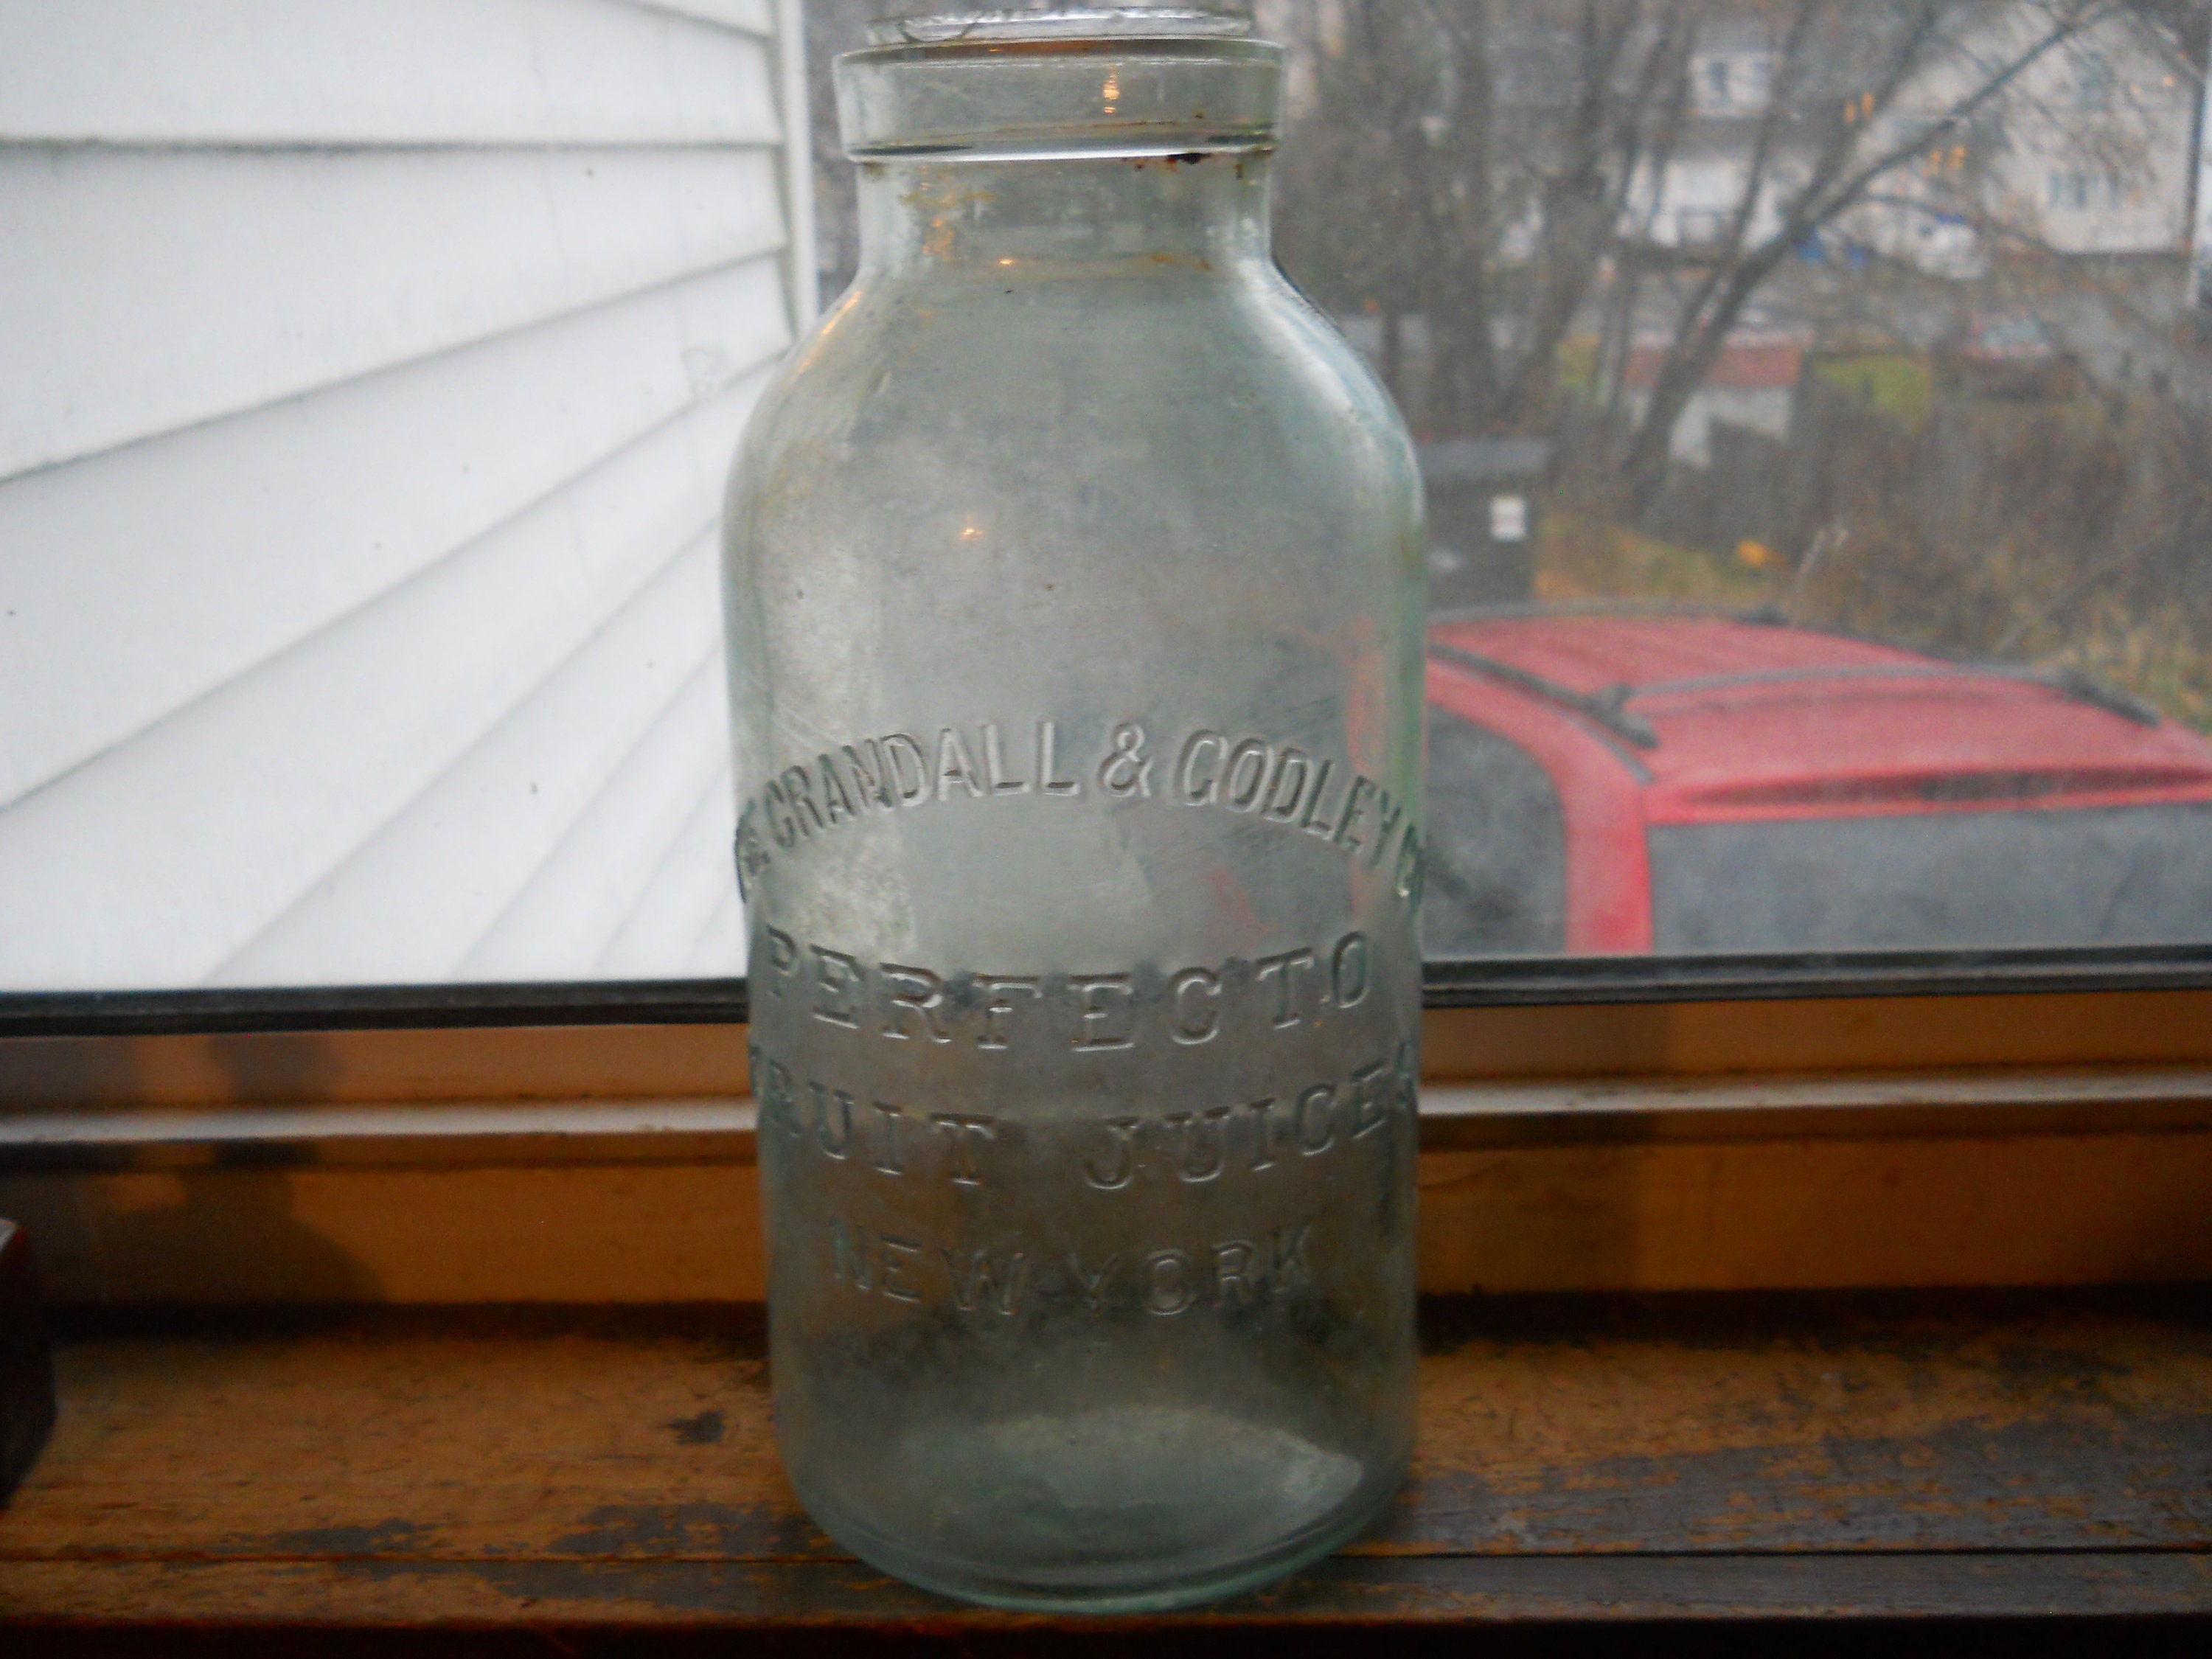 Vintage Large 12 Greenish Glass Milk Bottle W/ Ribbed Grip Indent